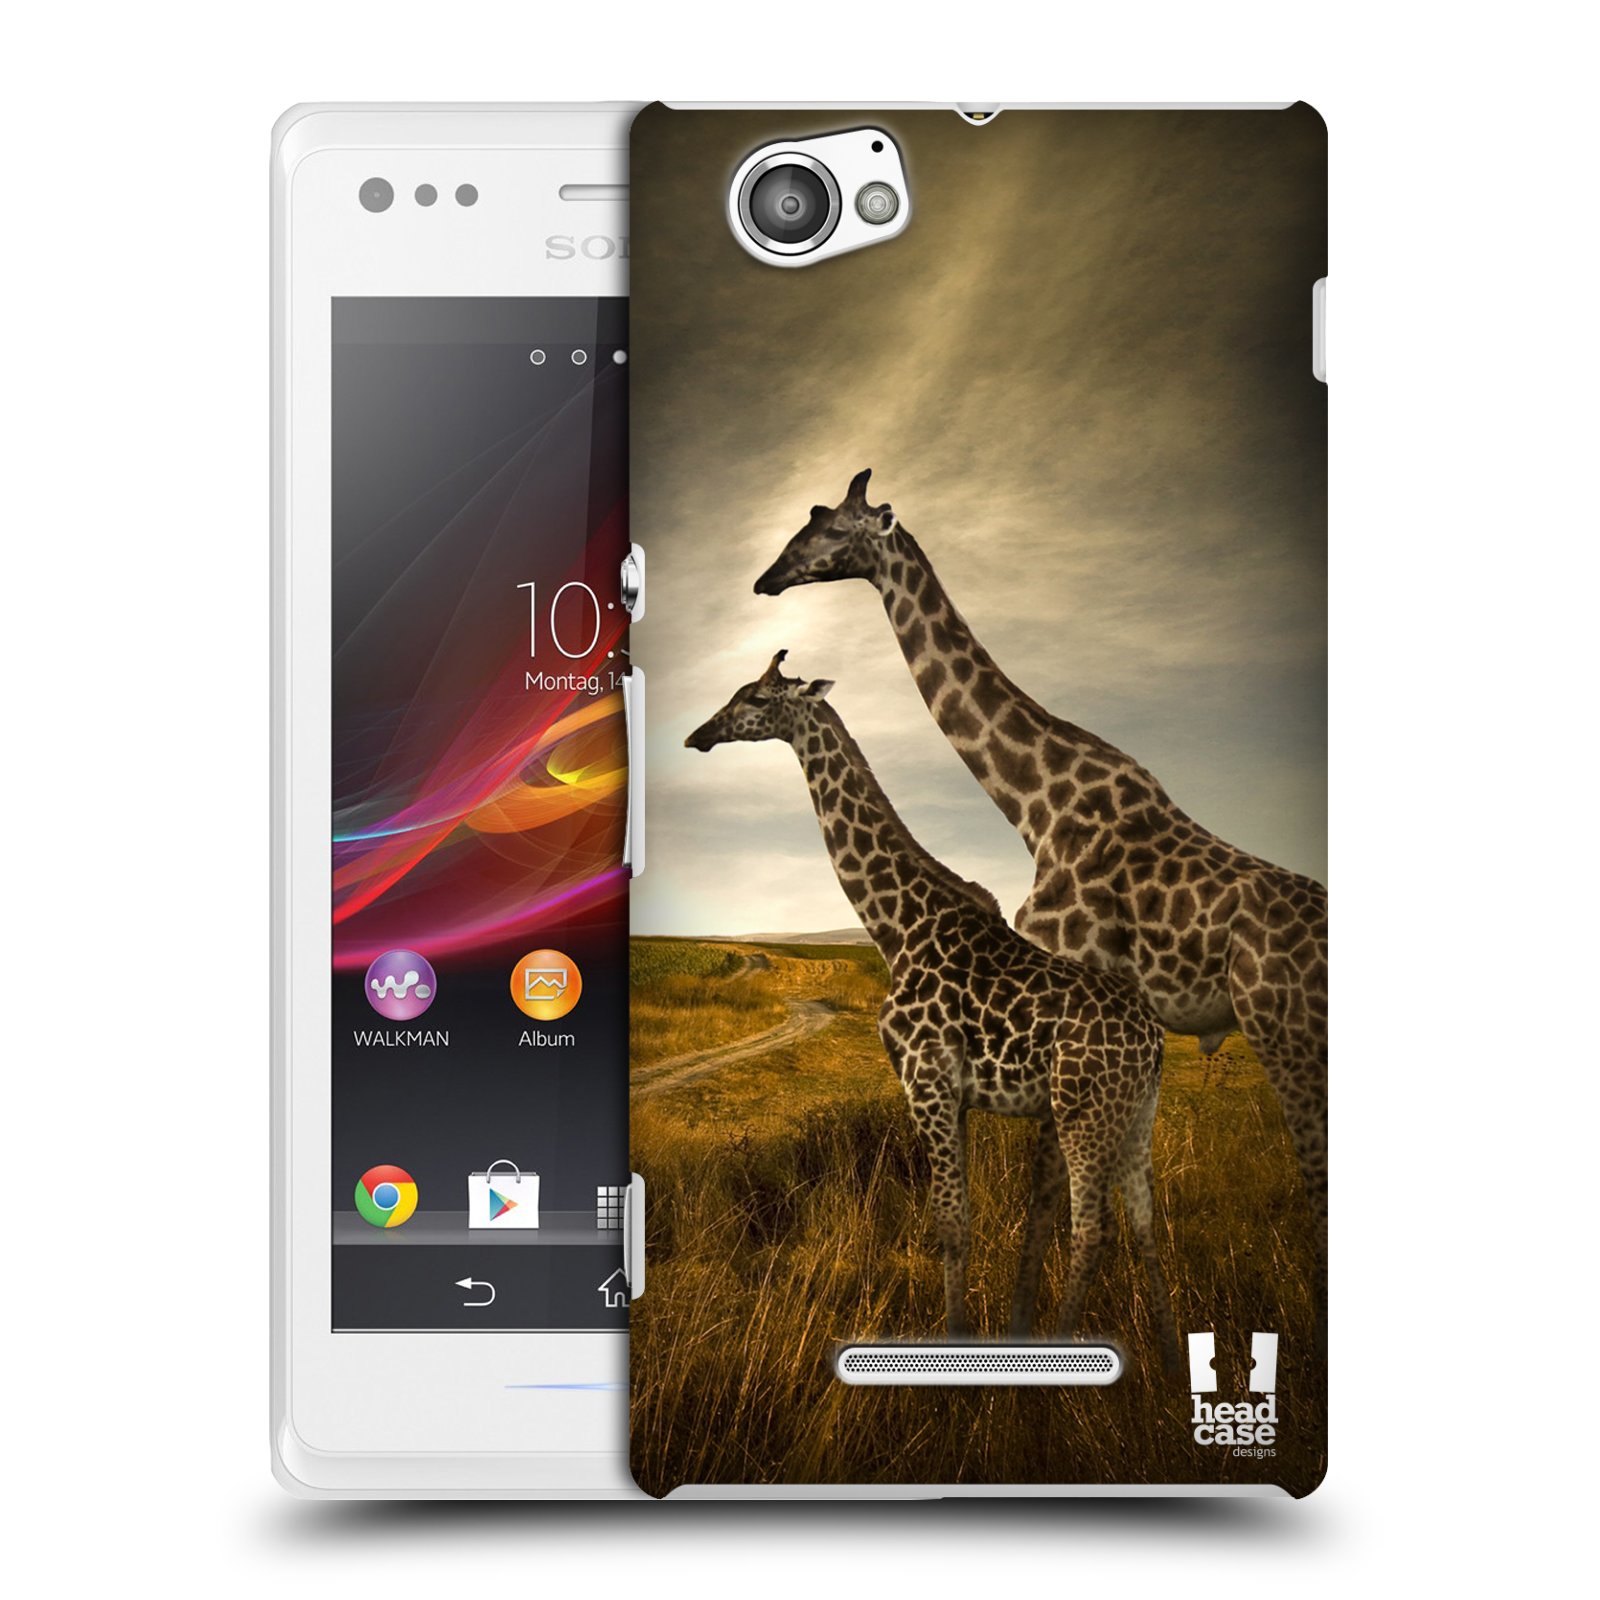 HEAD CASE plastový obal na mobil Sony Xperia M vzor Divočina, Divoký život a zvířata foto AFRIKA ŽIRAFY VÝHLED